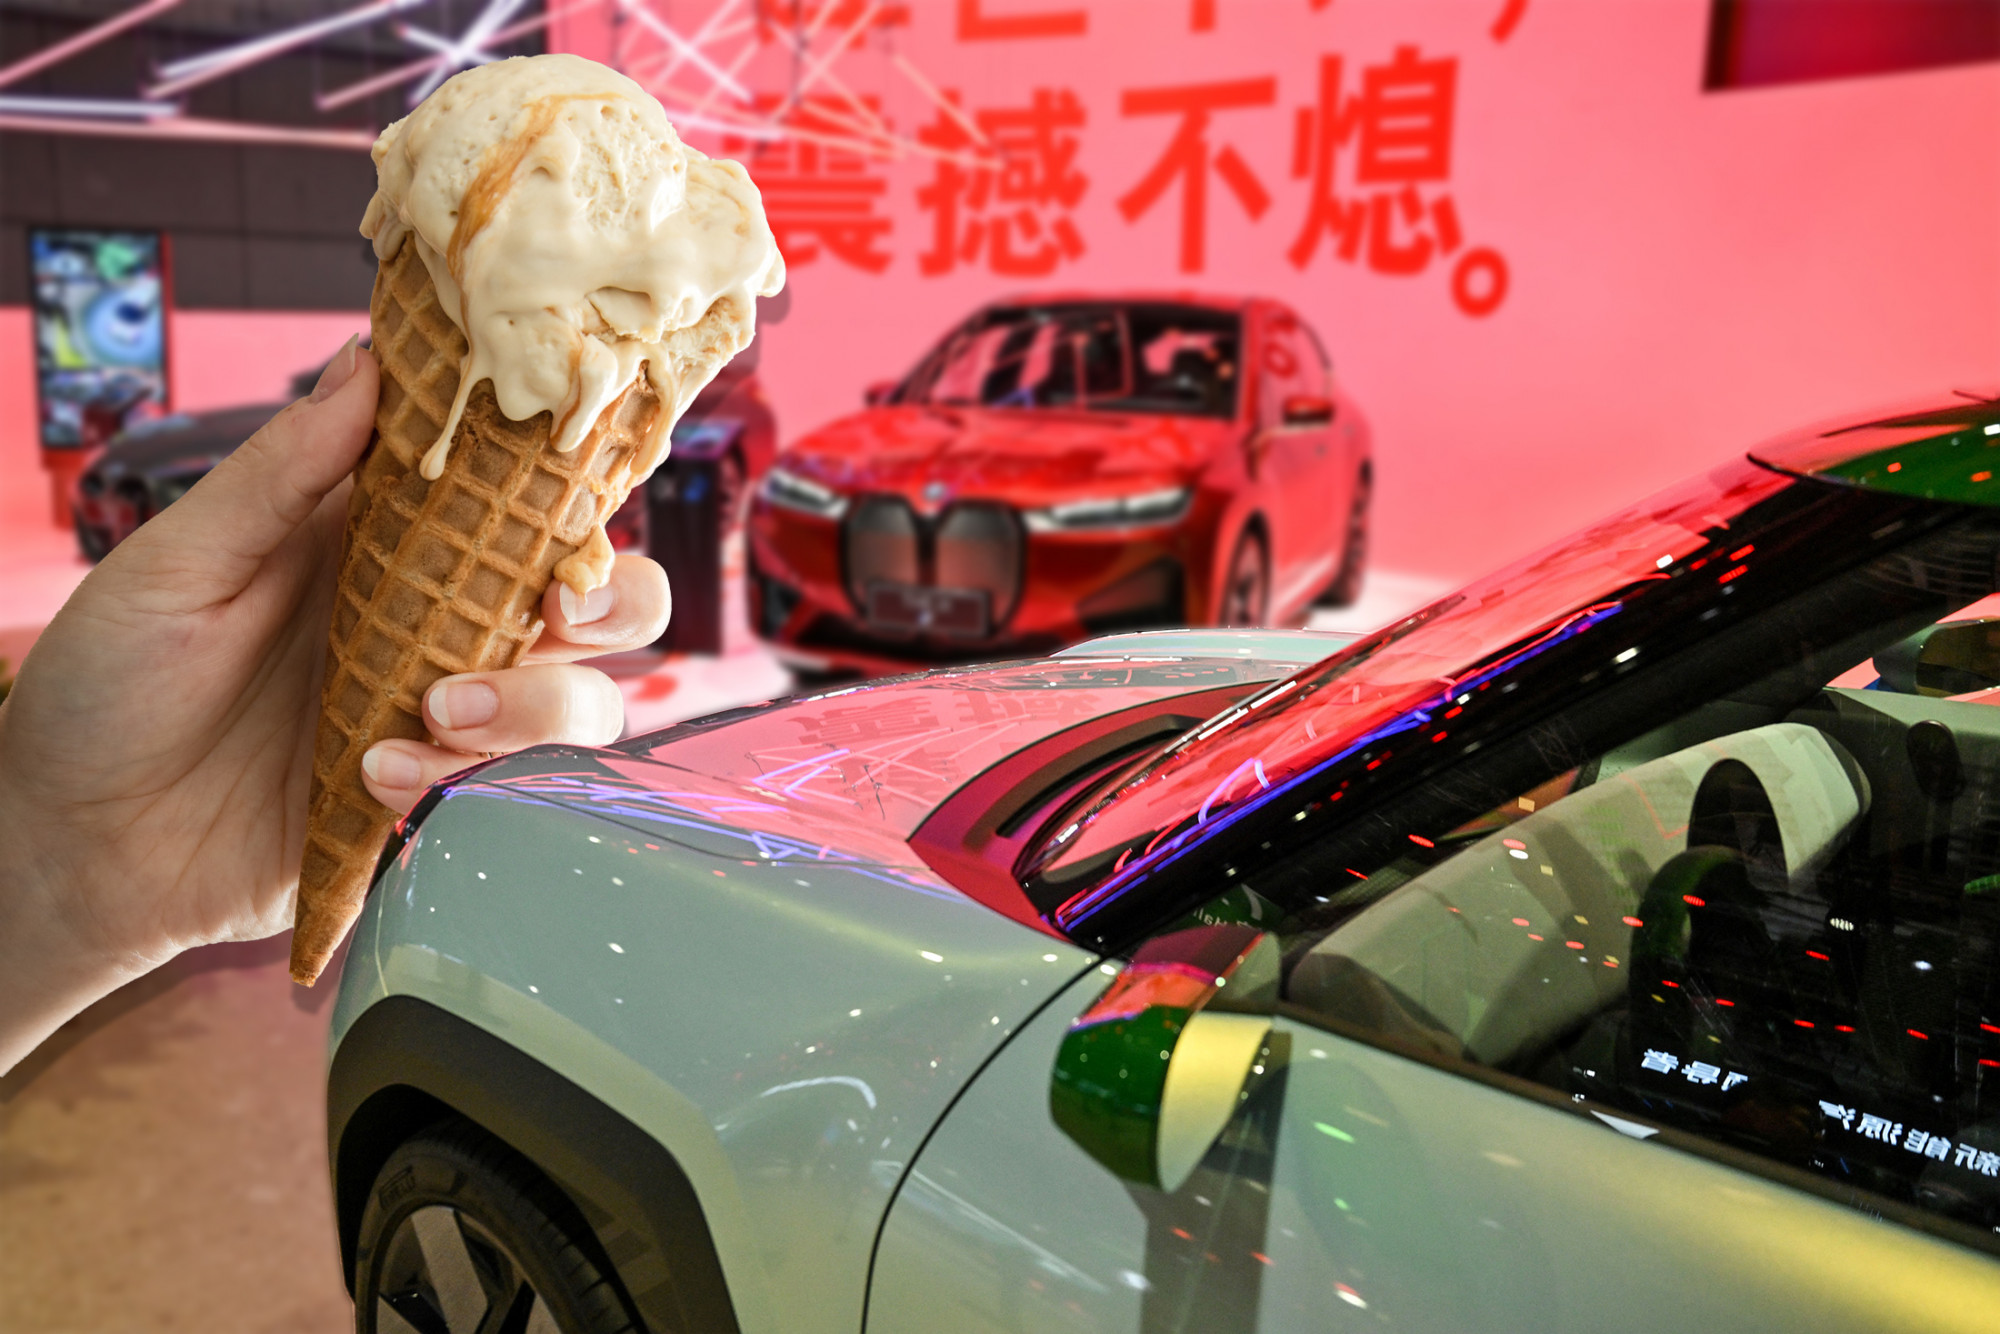 Botrány a sanghaji autószalonon: a BMW csak a külföldieknek adott ajándék fagyit, a helyieknek nem